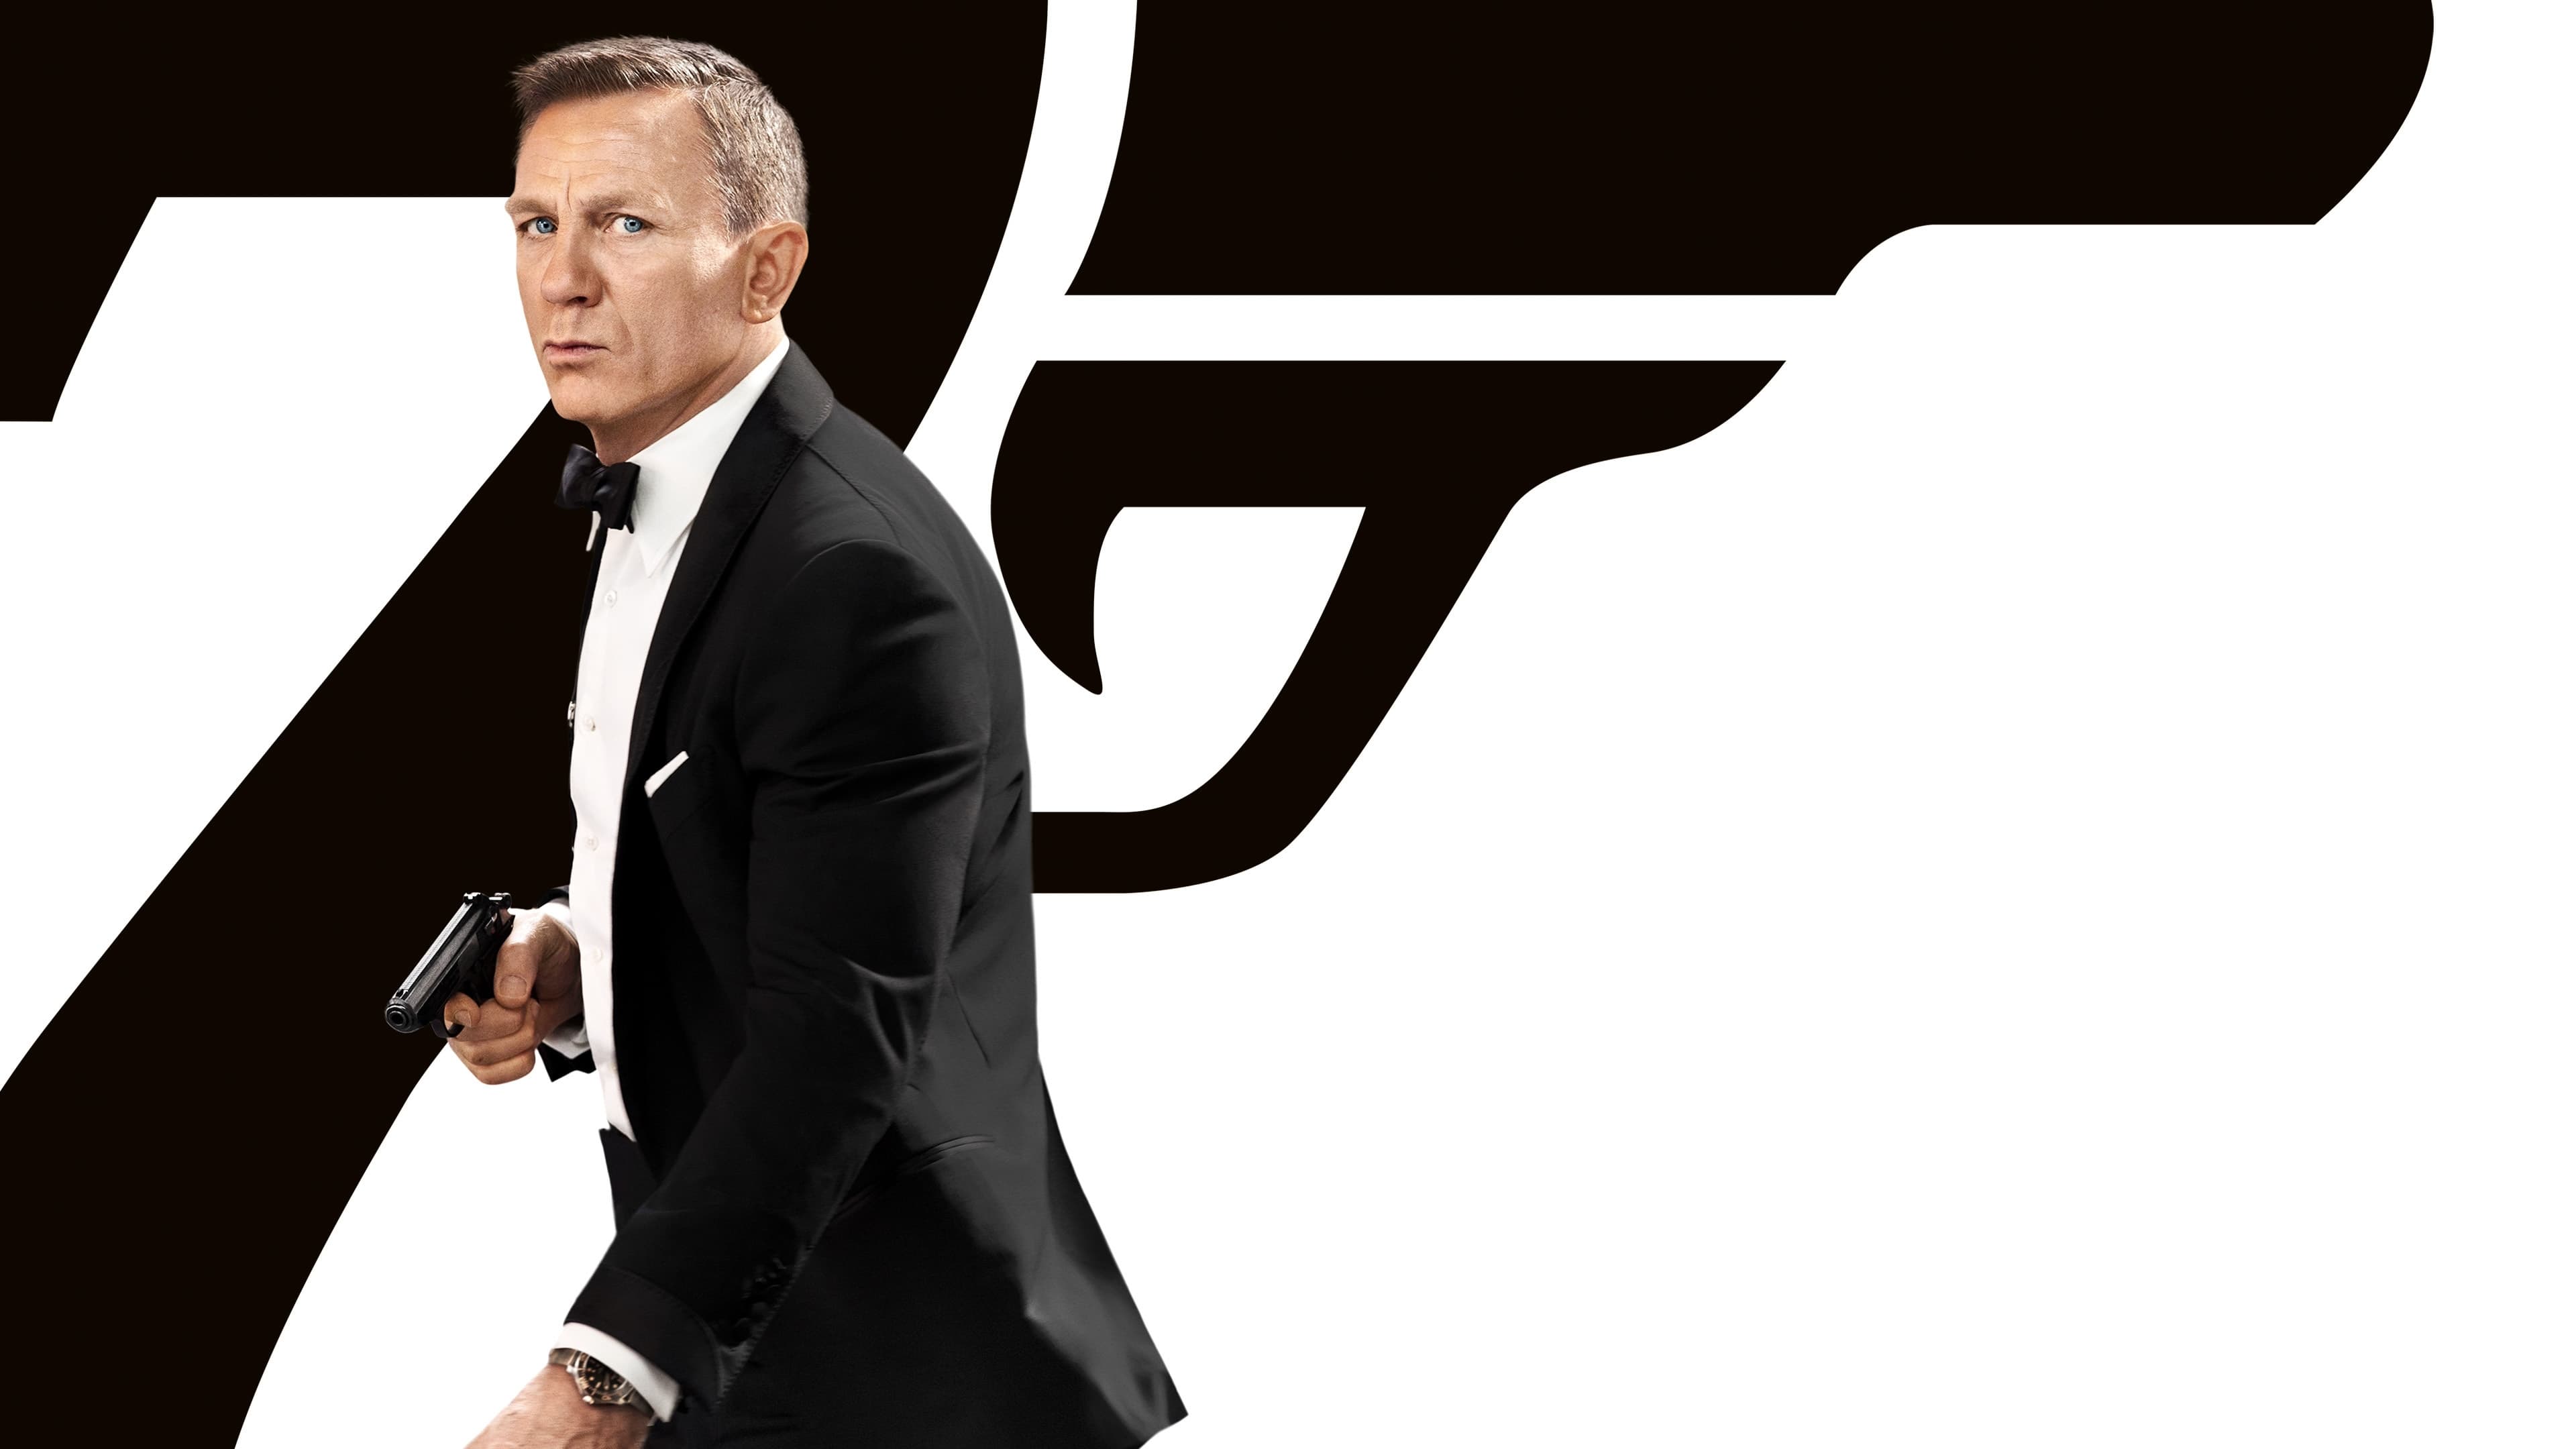 007: พยัคฆ์ร้ายฝ่าเวลามรณะ